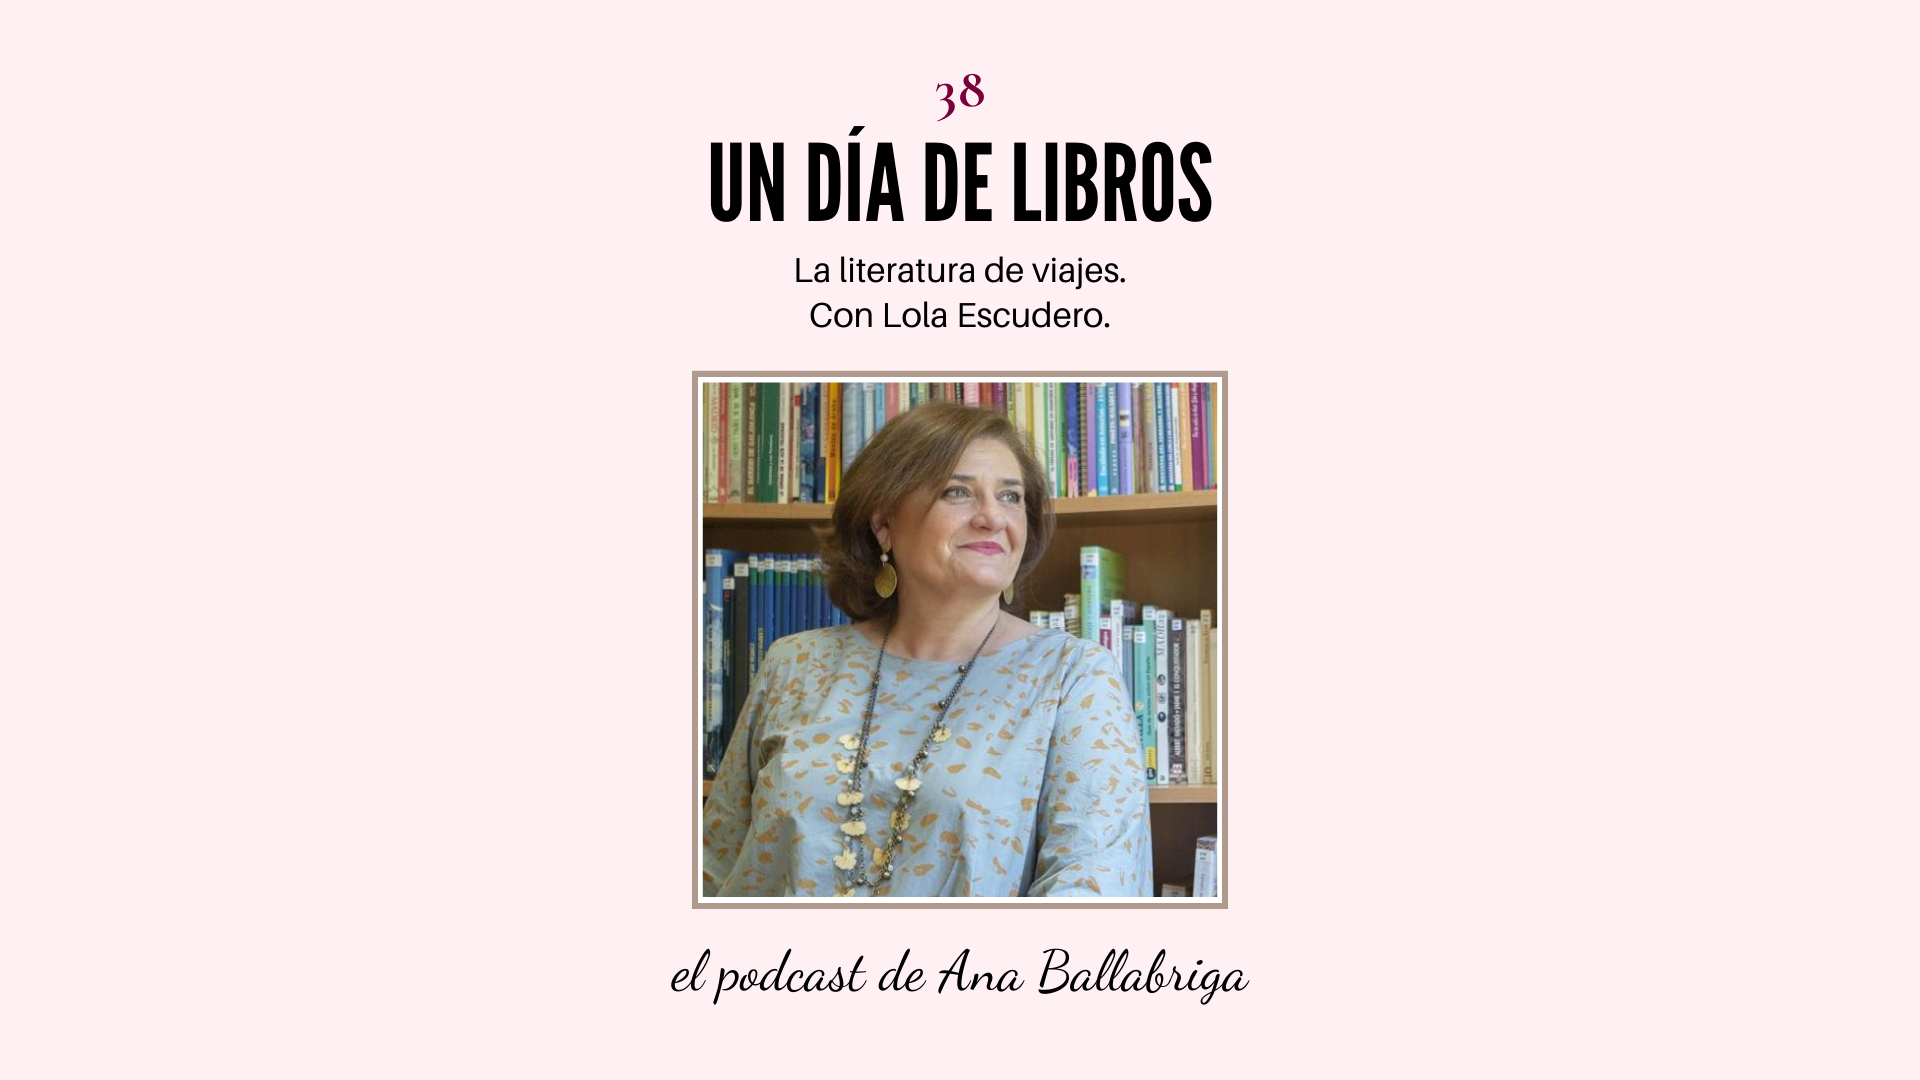 La literatura de viajes, con Lola Escudero